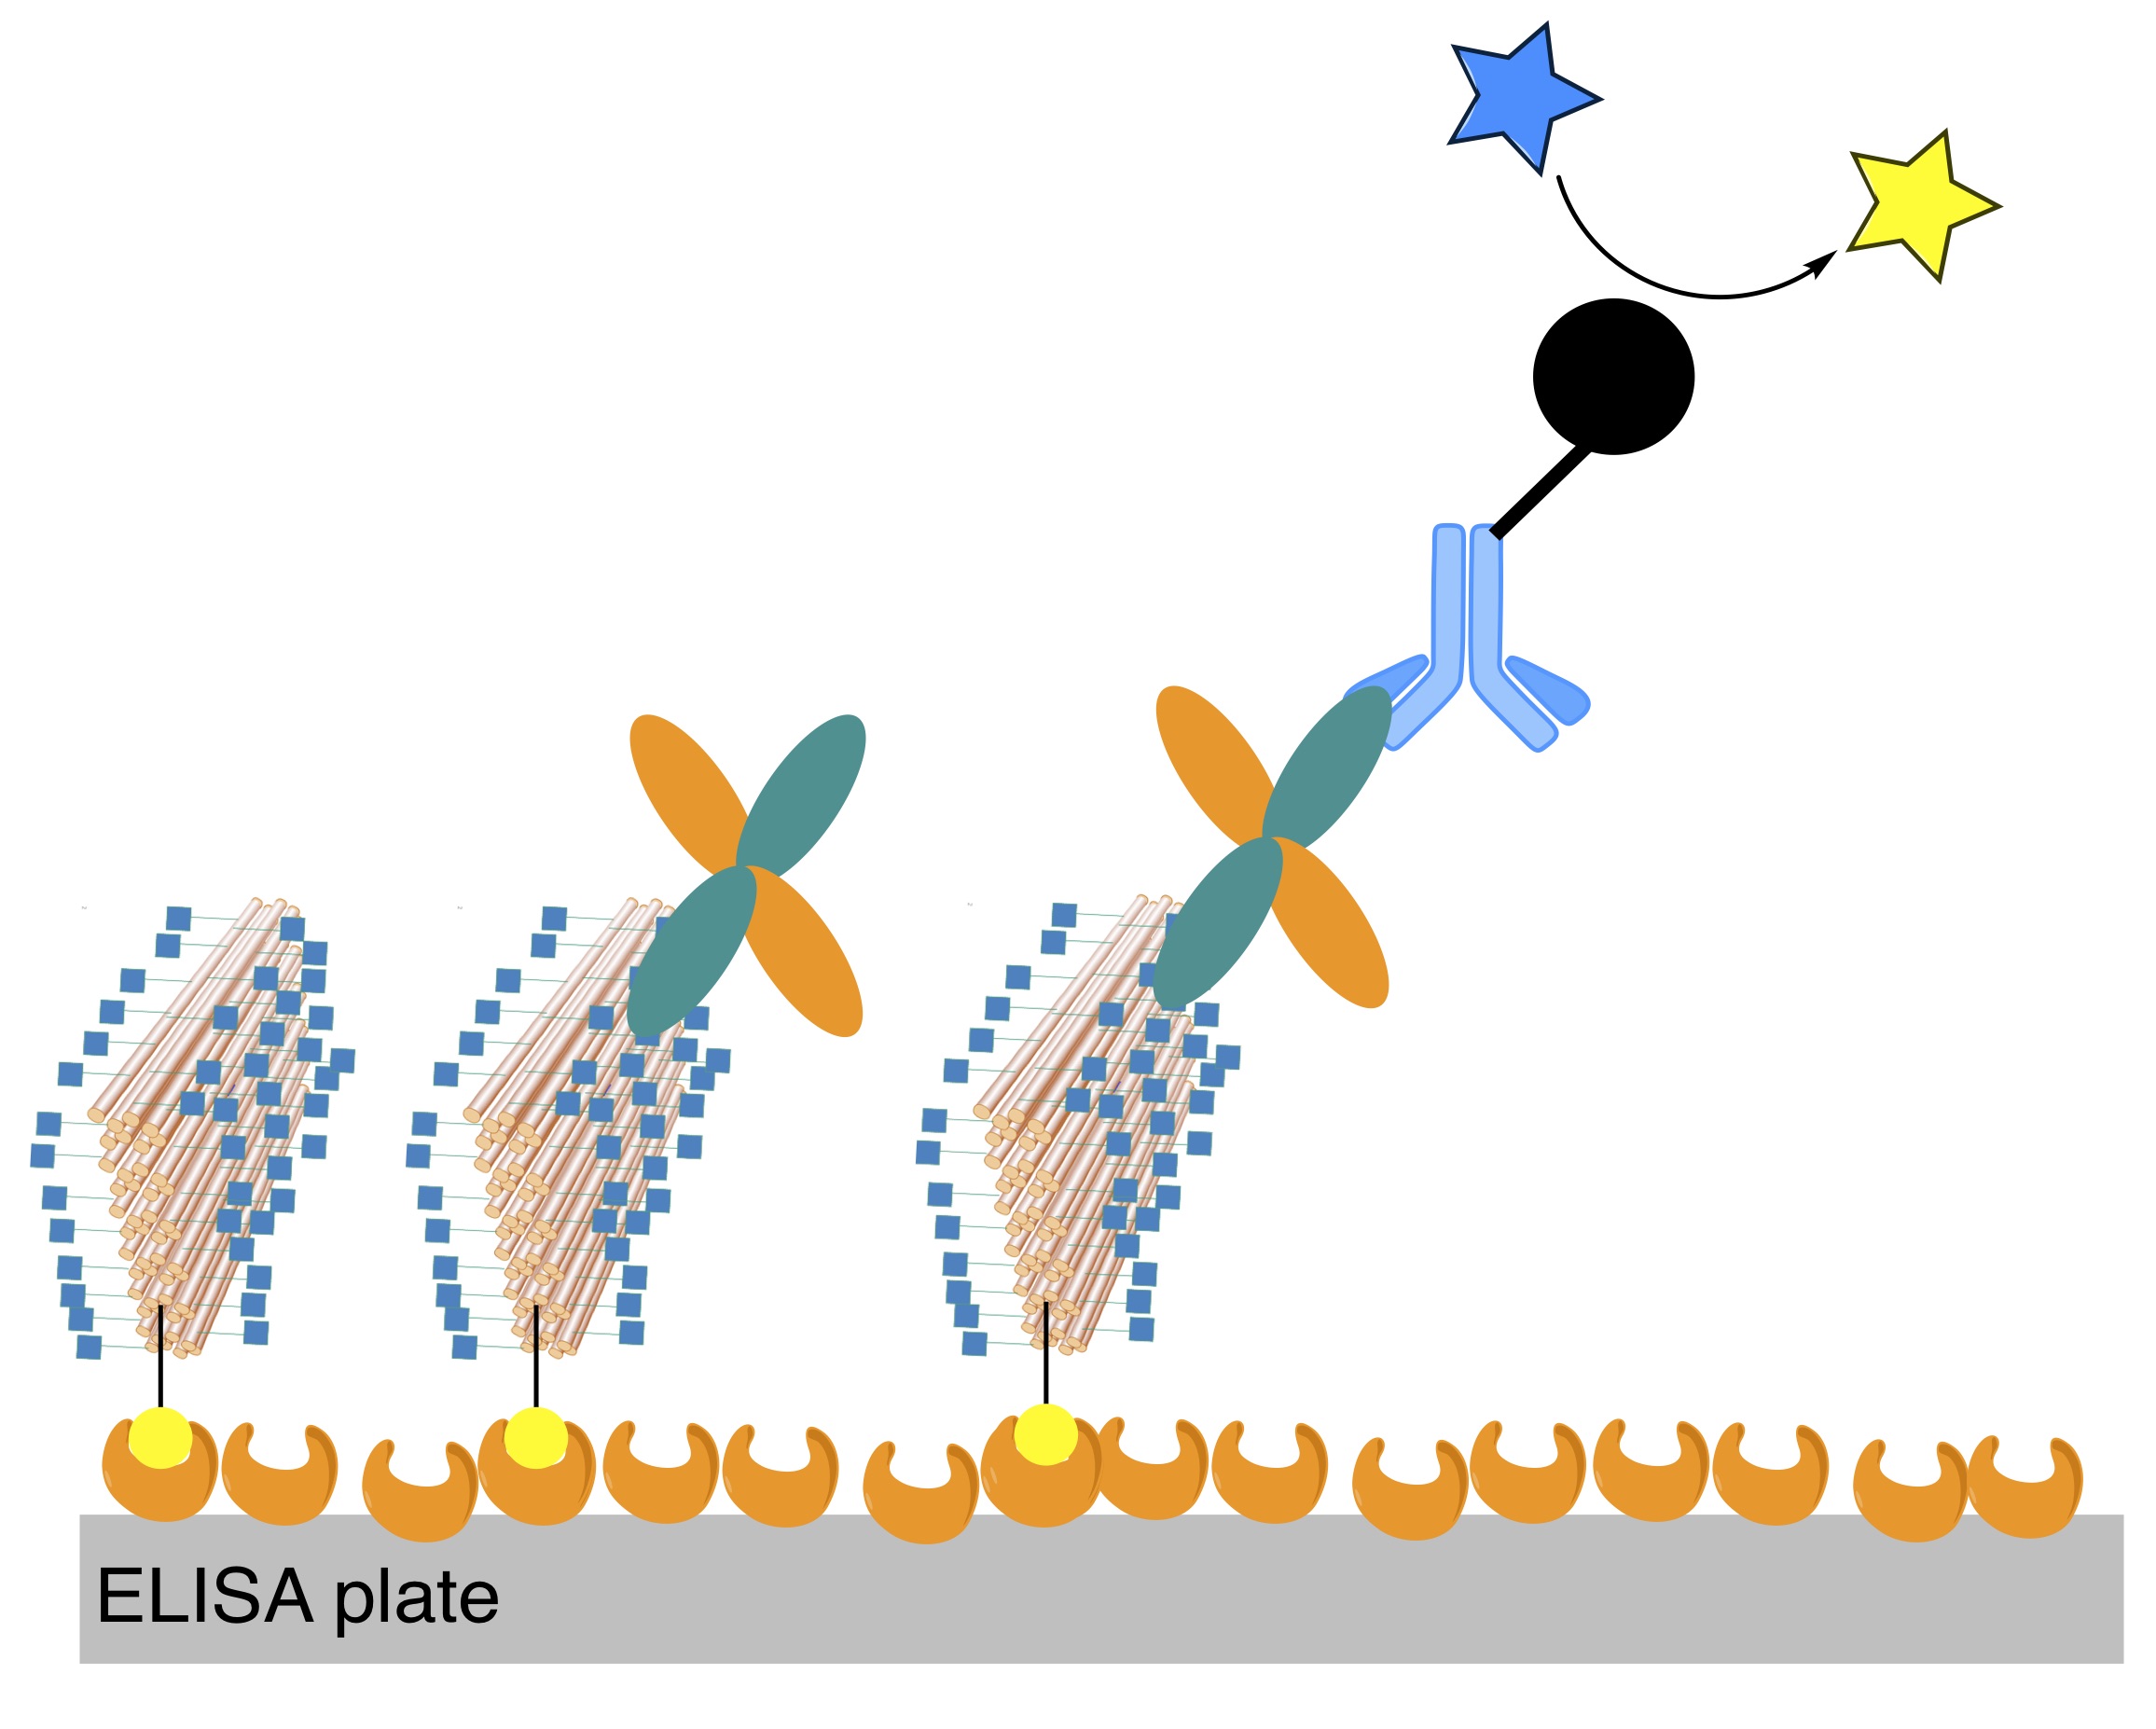 Nahezu 100 Zuckermoleküle sind an große »DNA-Origami« -Nanostrukturen konjugiert, die aus mehreren hundert DNA-Oligonukleotiden gebildet werden. Wenn diese in ELISA-Platten integriert sind, können sie Standardantikörper ersetzen, die zum Einfangen oder Erkennen von Zielen in der Immundiagnostik verwendet werden.